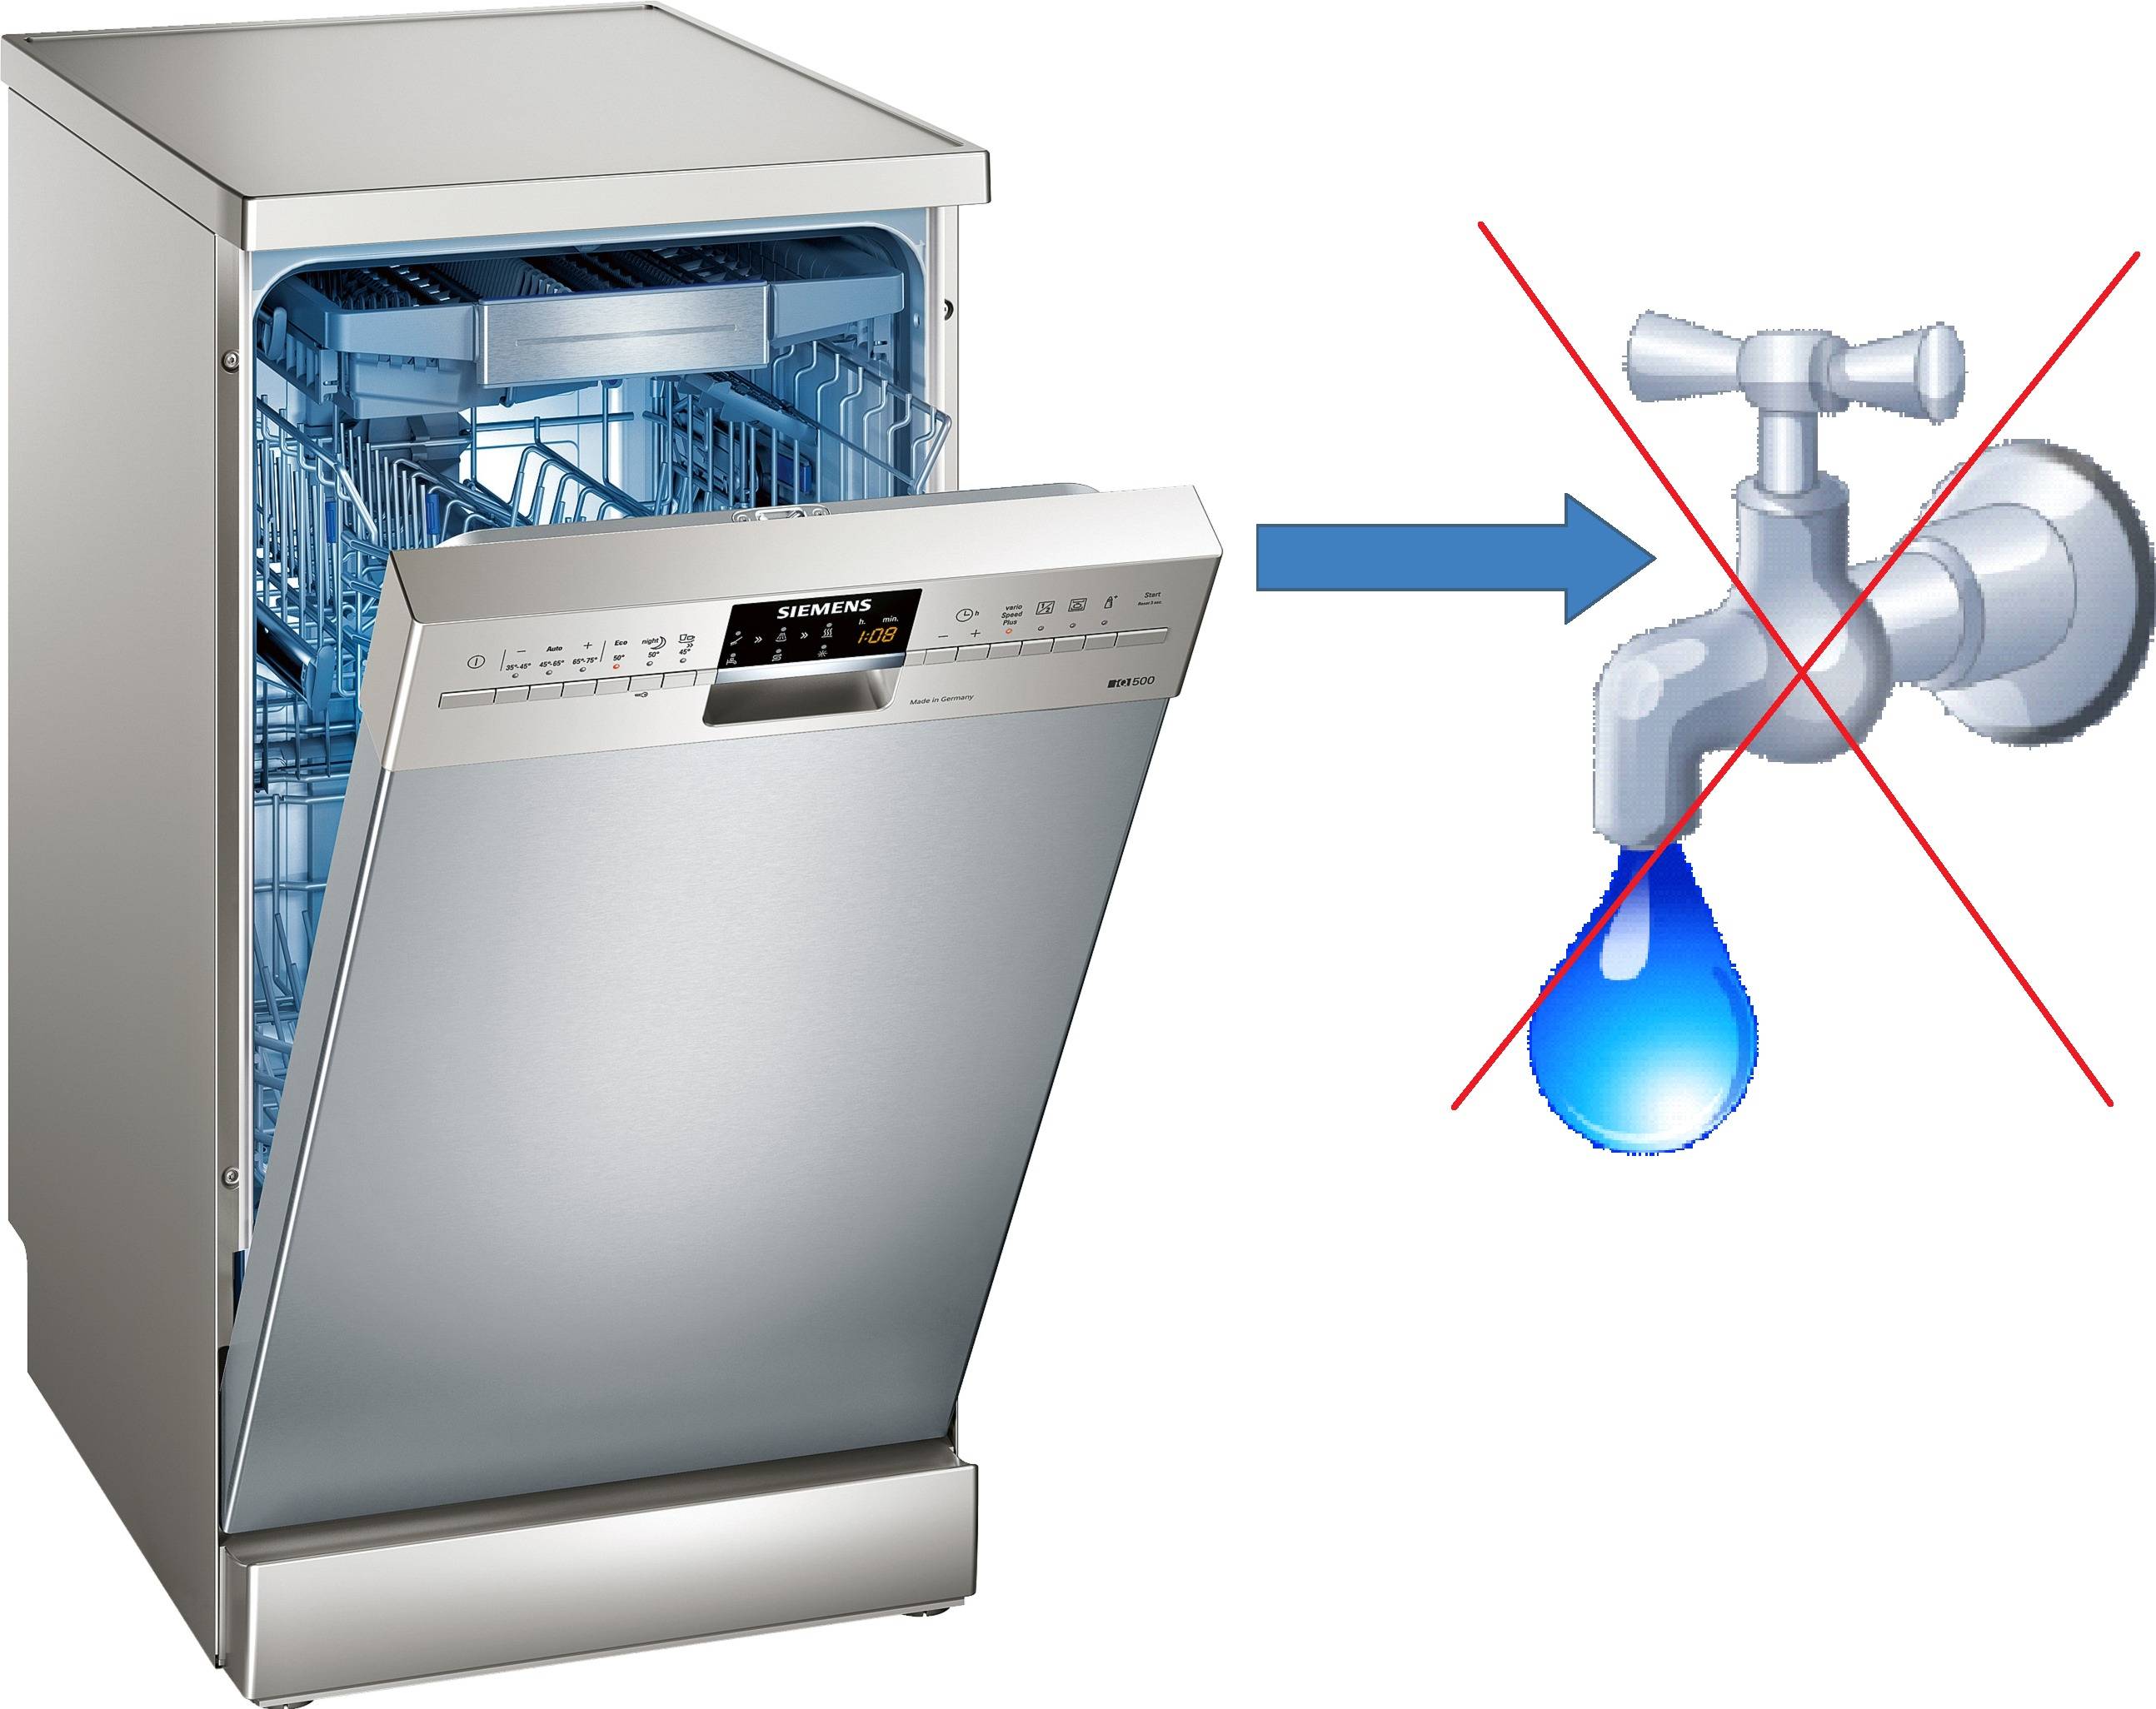 Посудомойка холодная вода. E15 Siemens посудомойка. Посудомойка Леран без водопровода. Gorenje посудомоечная машина с баком для воды. ПММ BDW 4106 D.